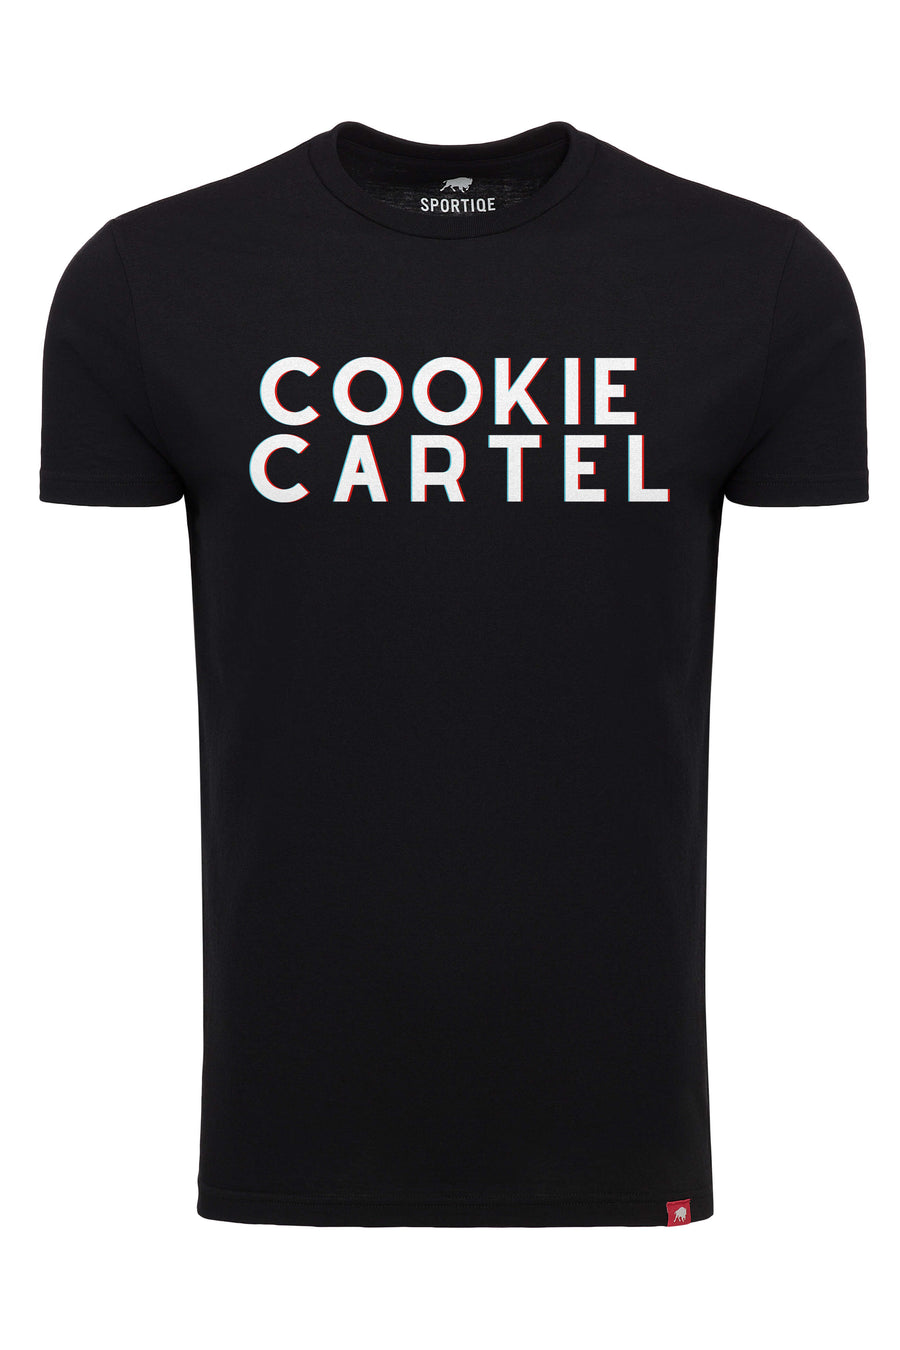 Cookie Cartel T